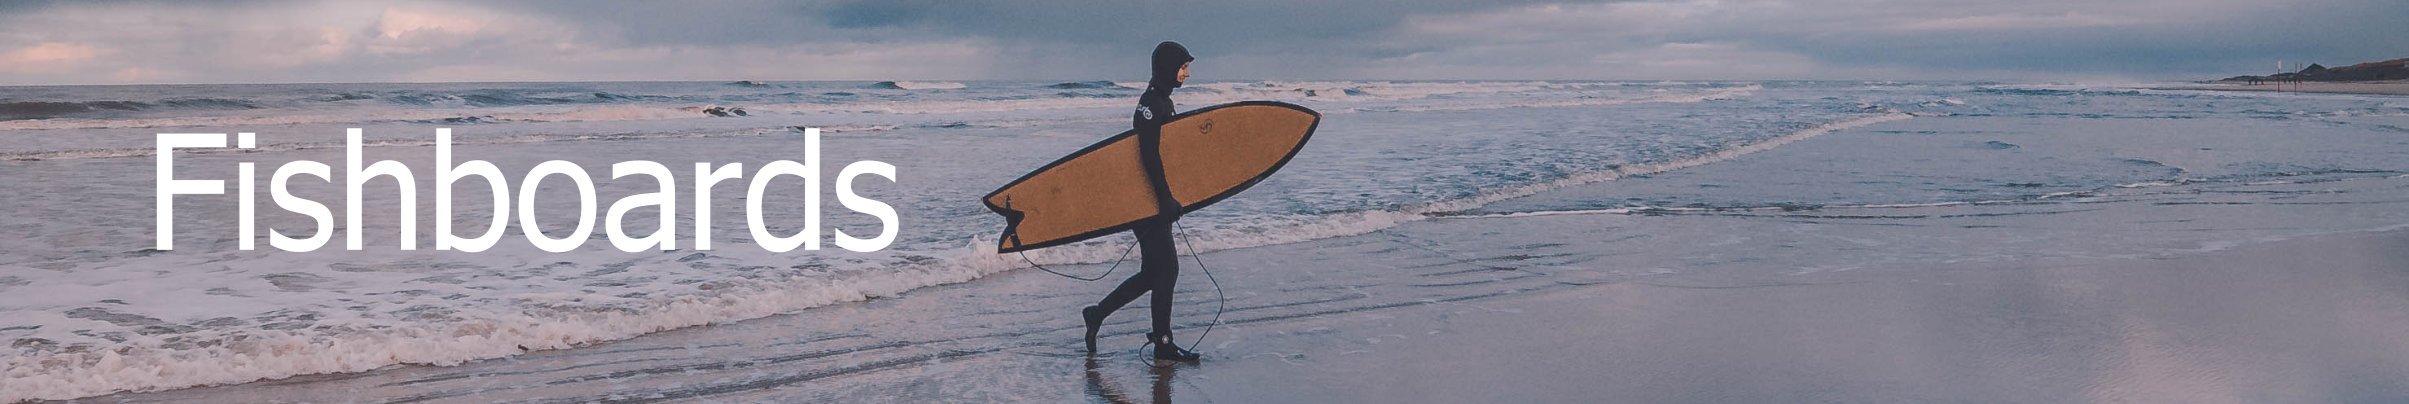 Fish surfboard online kaufen deutschland surfshop header